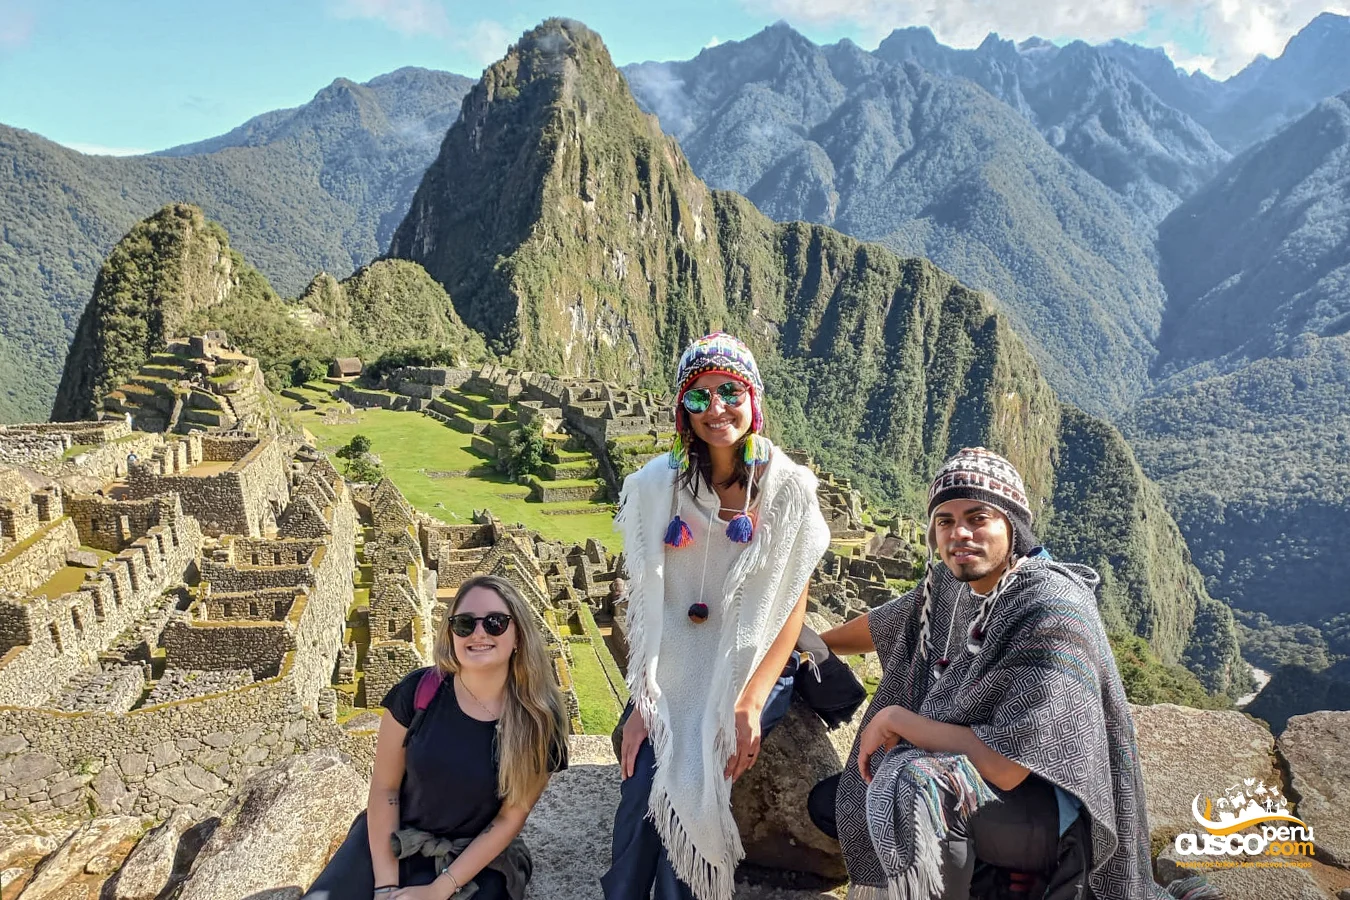 Height in Machu Picchu, Cusco. Source: CuscoPeru.com